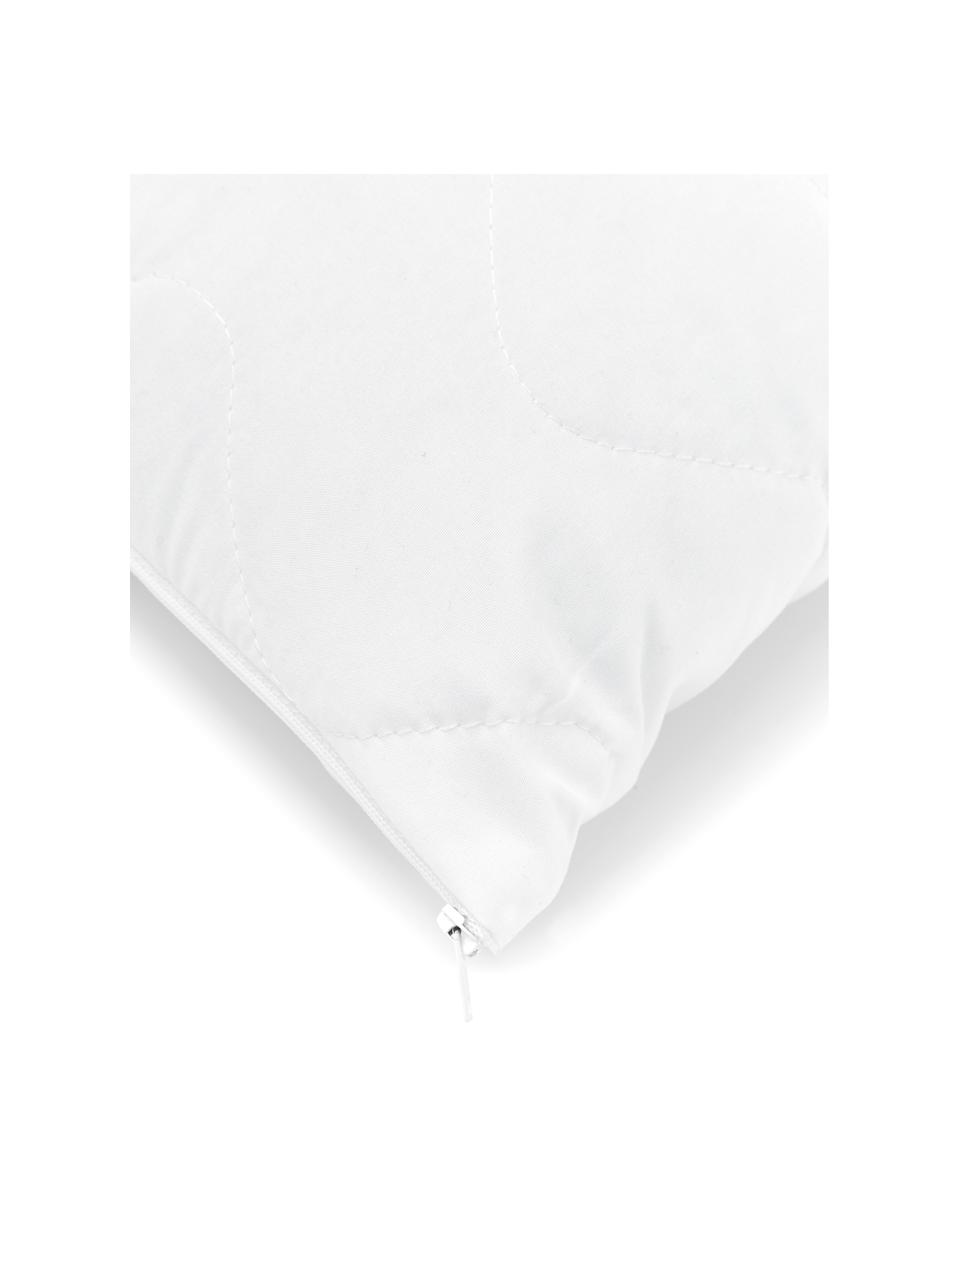 Premium Kissen-Inlett Sia, 40x60, Microfaser-Füllung, Hülle: 100% Polyester, wattiert, Weiß, B 40 x L 60 cm